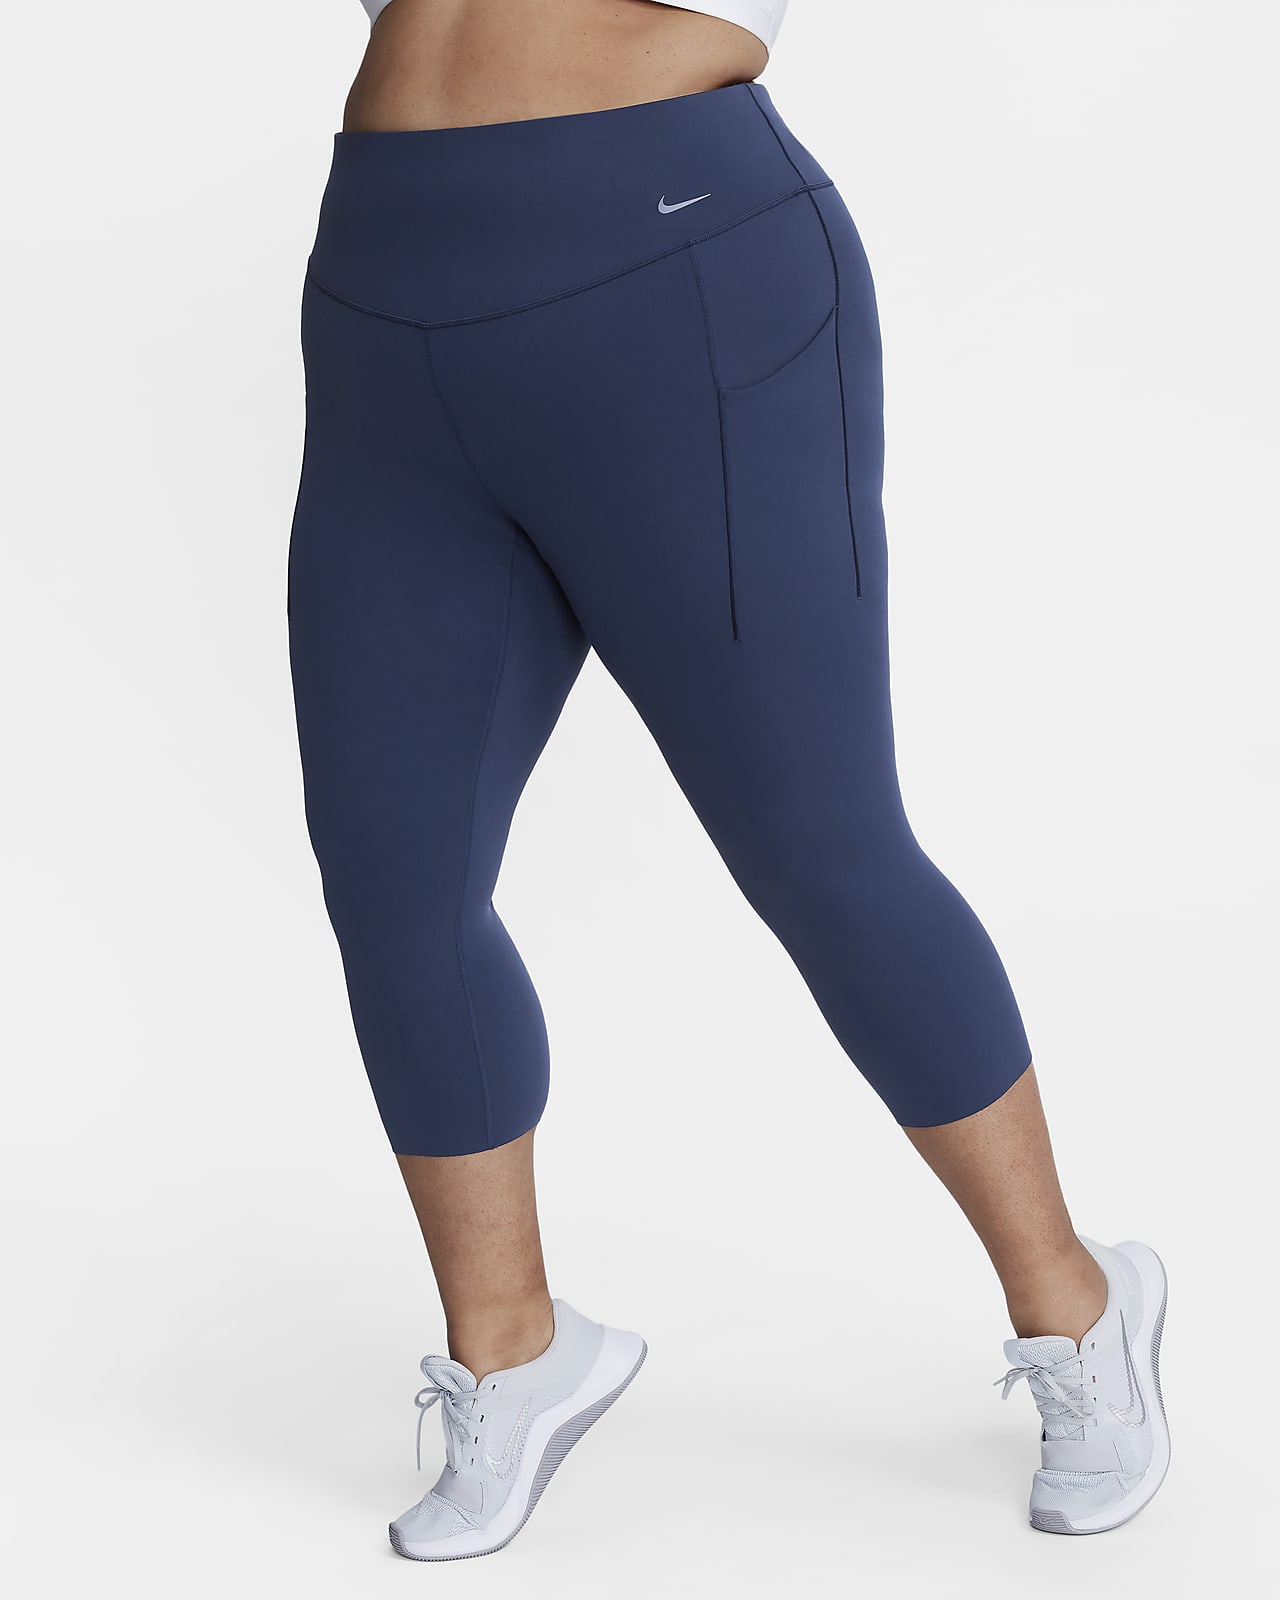 Pantalones cortos deportivos de cintura alta Fitness Yoga Mujeres Running  Joggings (Royal Blue) Tmvgtek Deportes Acuáticos